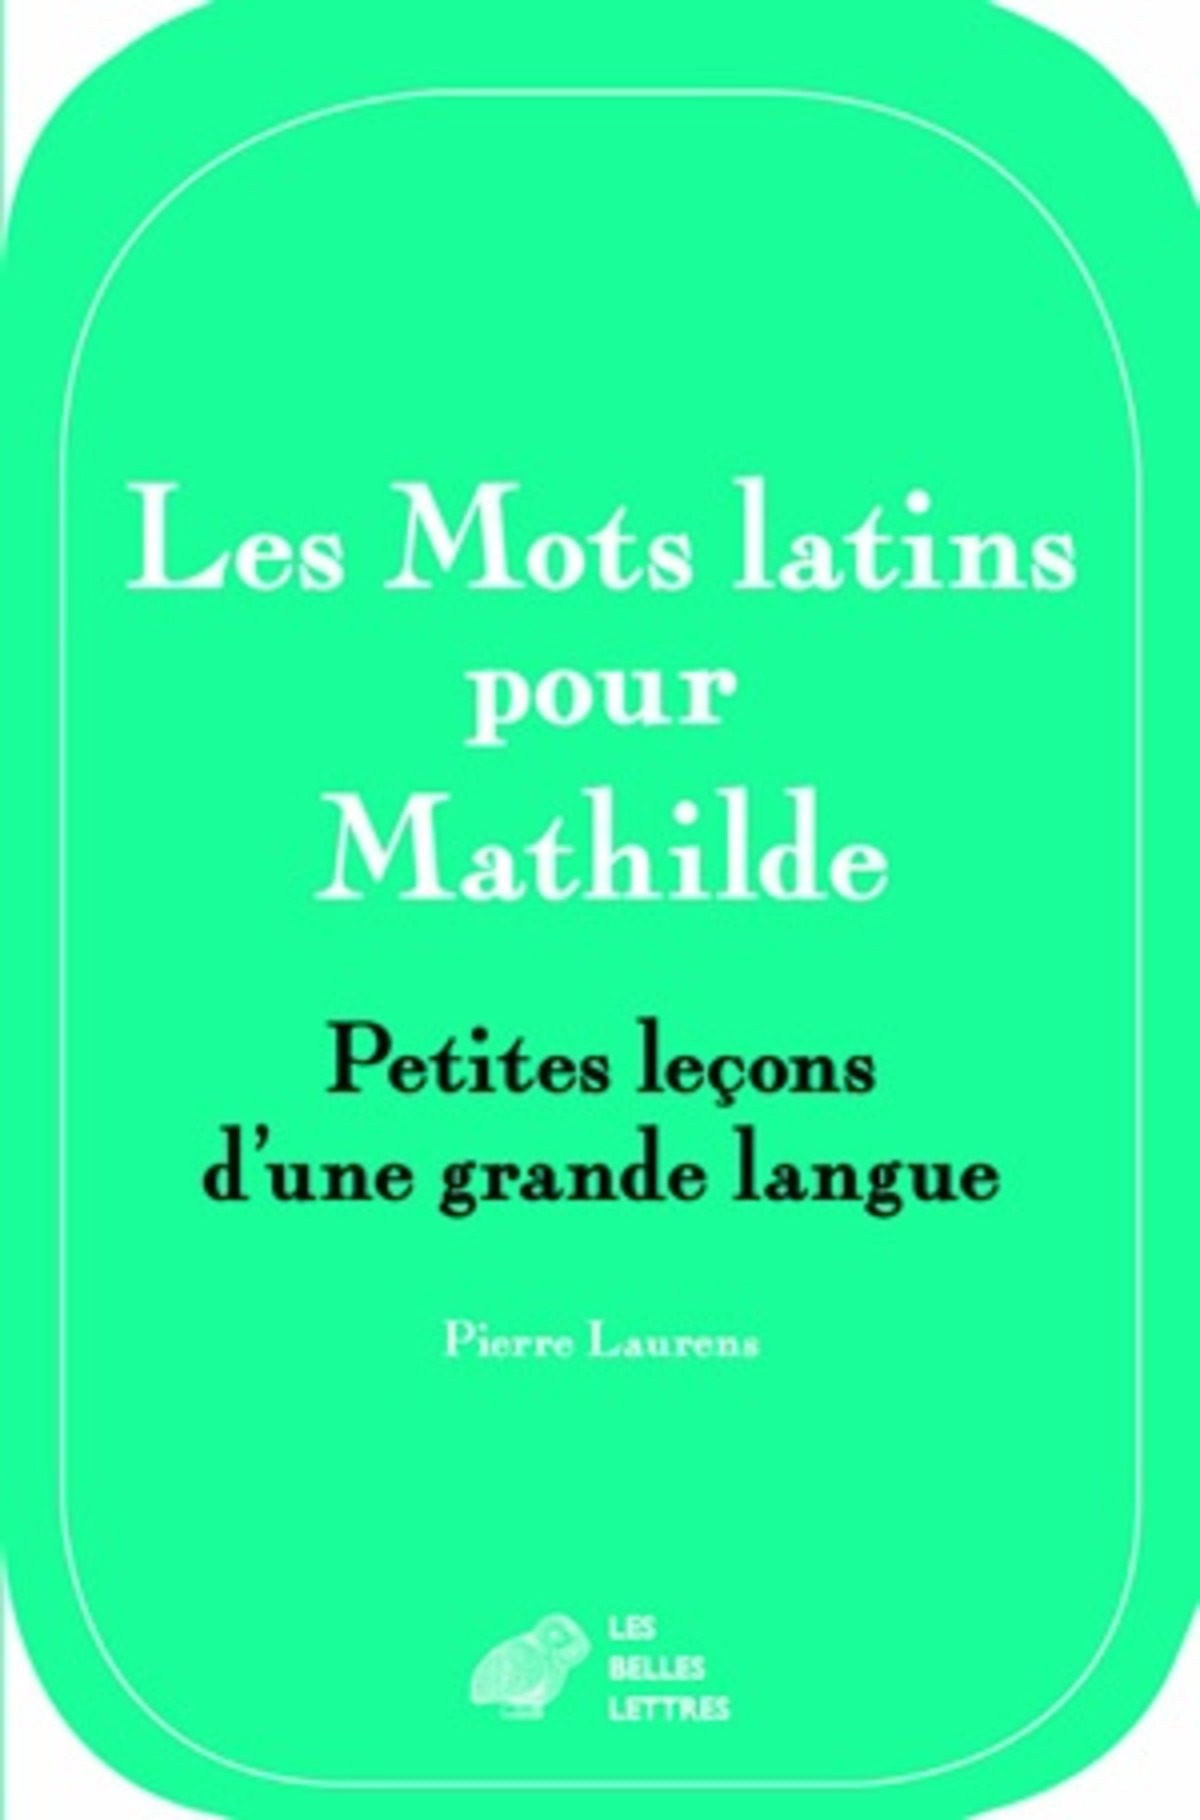 Les Mots latins pour Mathilde